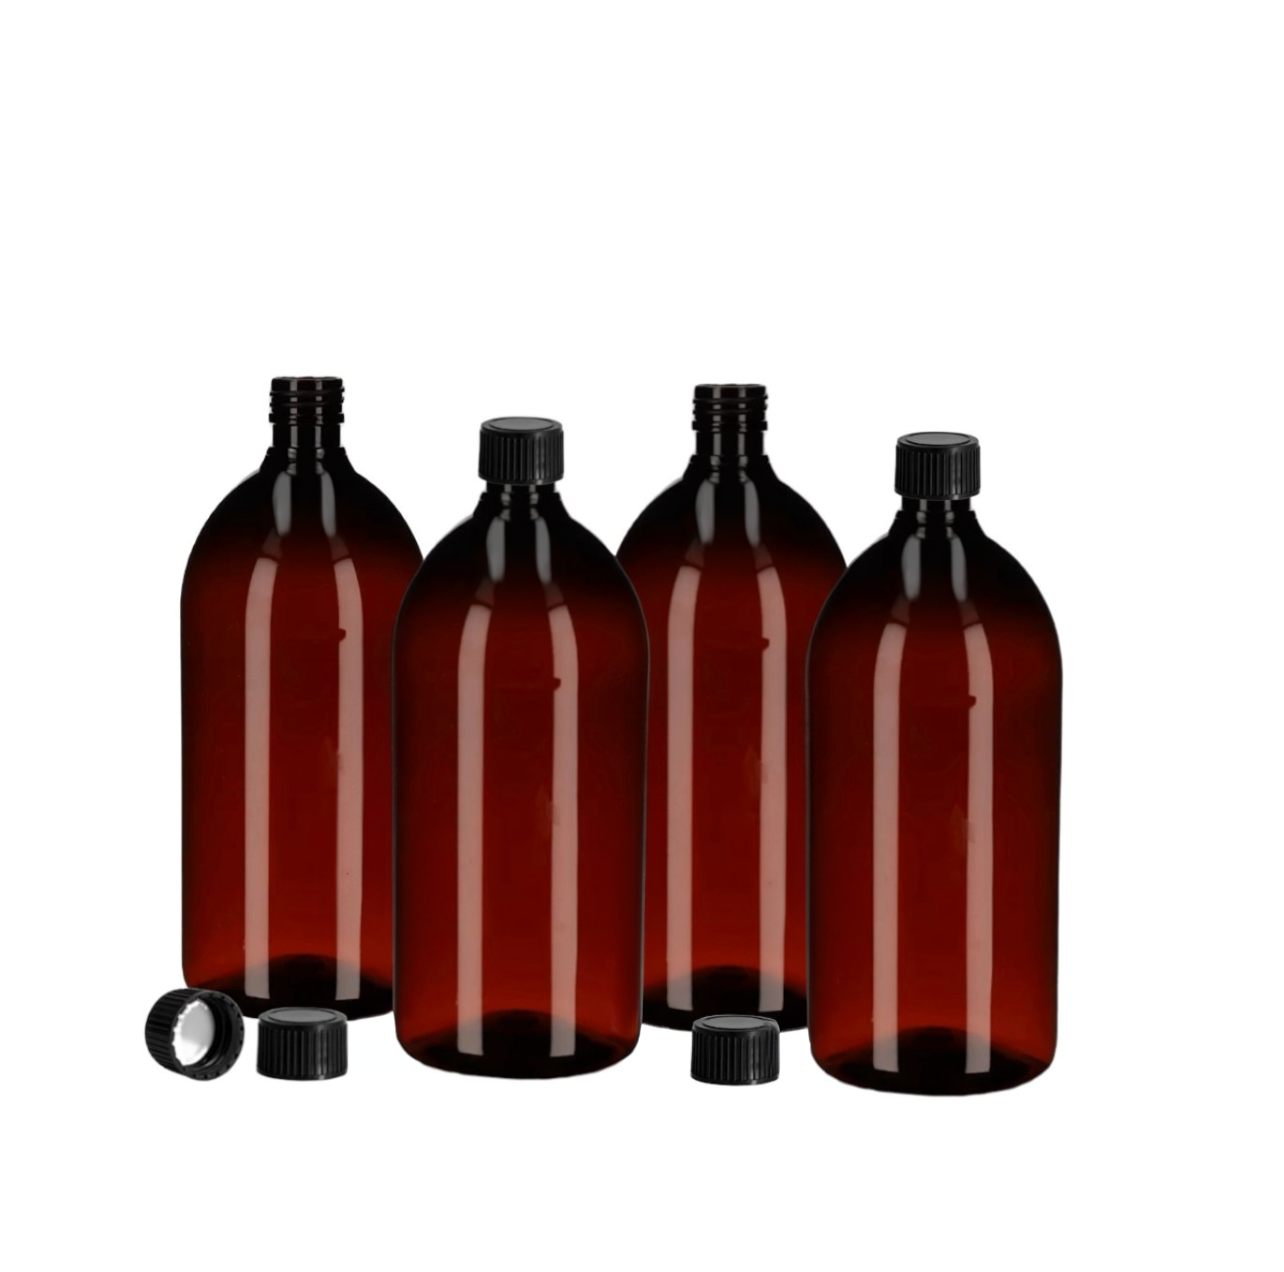 4 x Apothekerflasche, PET-Flaschen, 1 l statt Glas